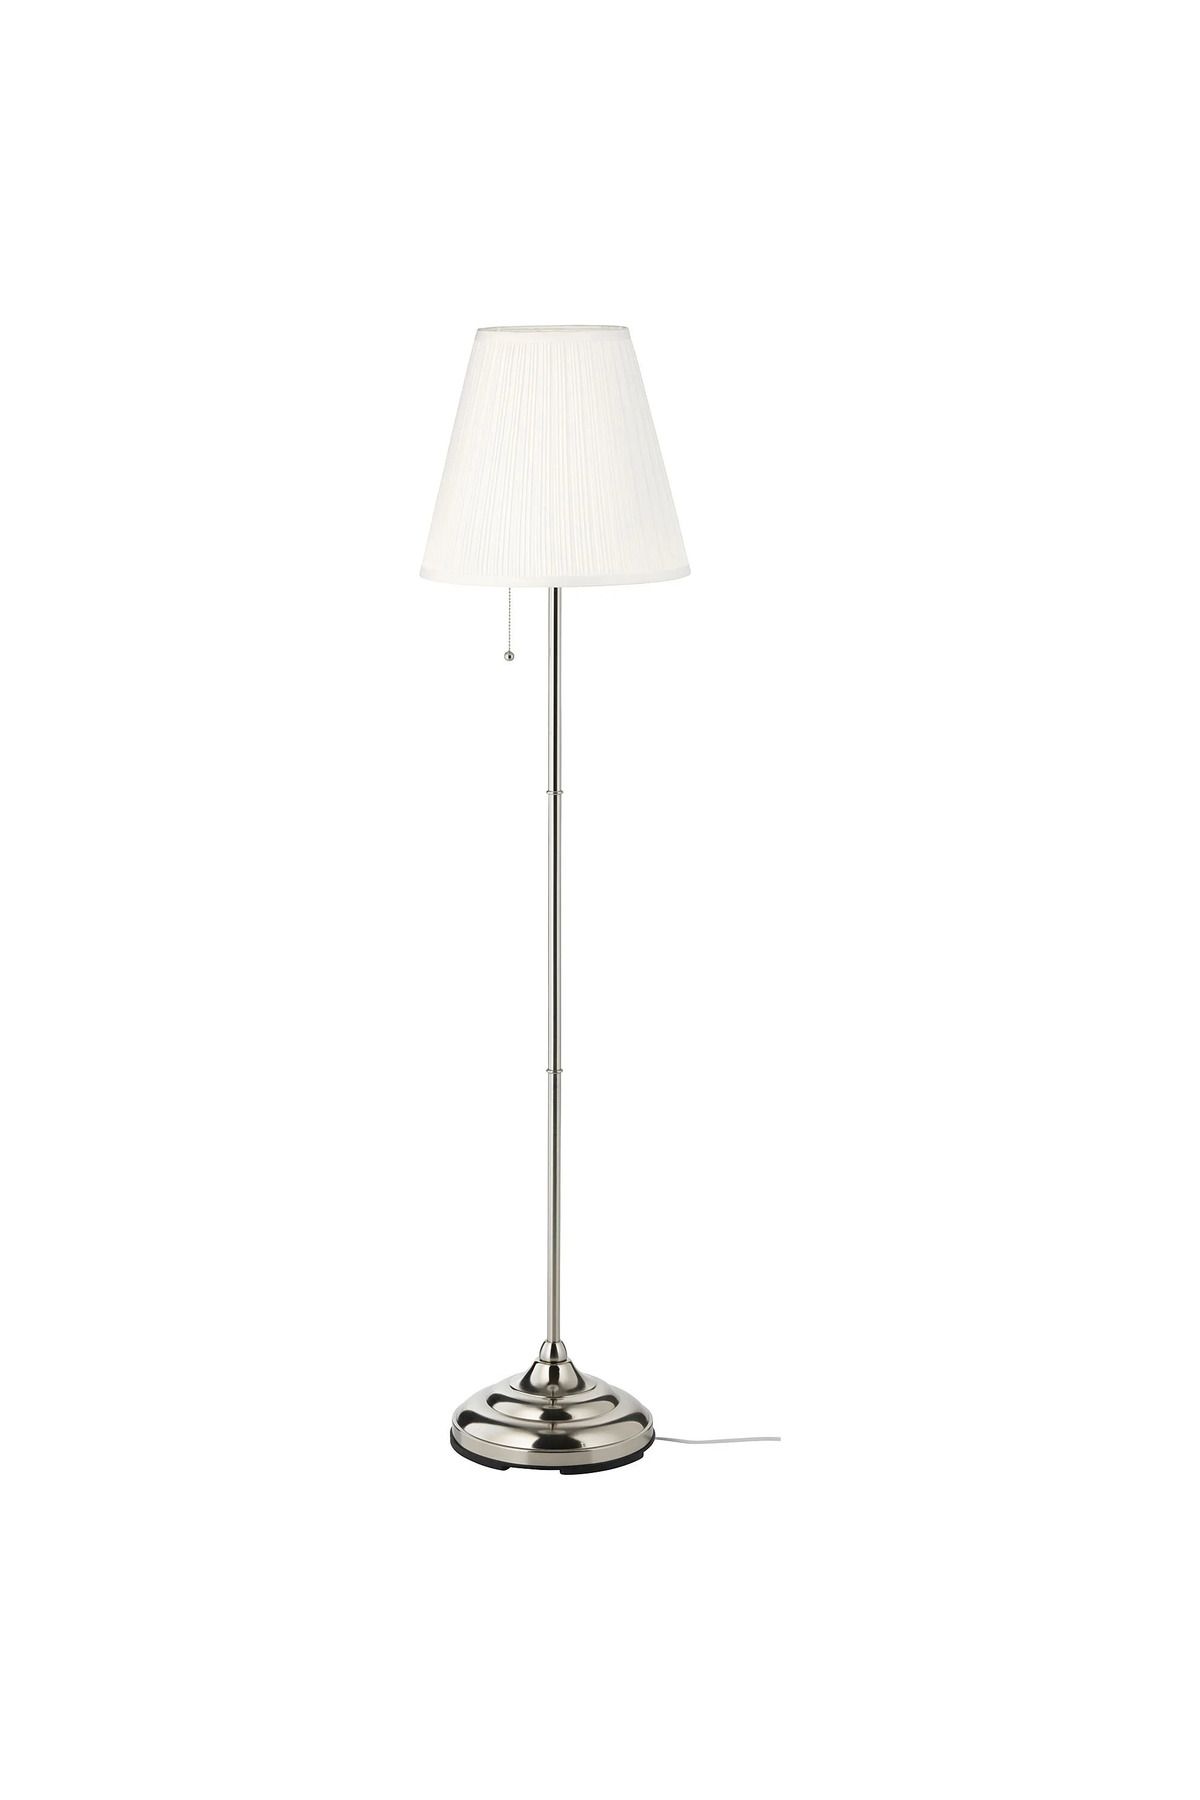 IKEA ÅRSTID yer lambası, beyaz-pirinç rengi, 155 cm